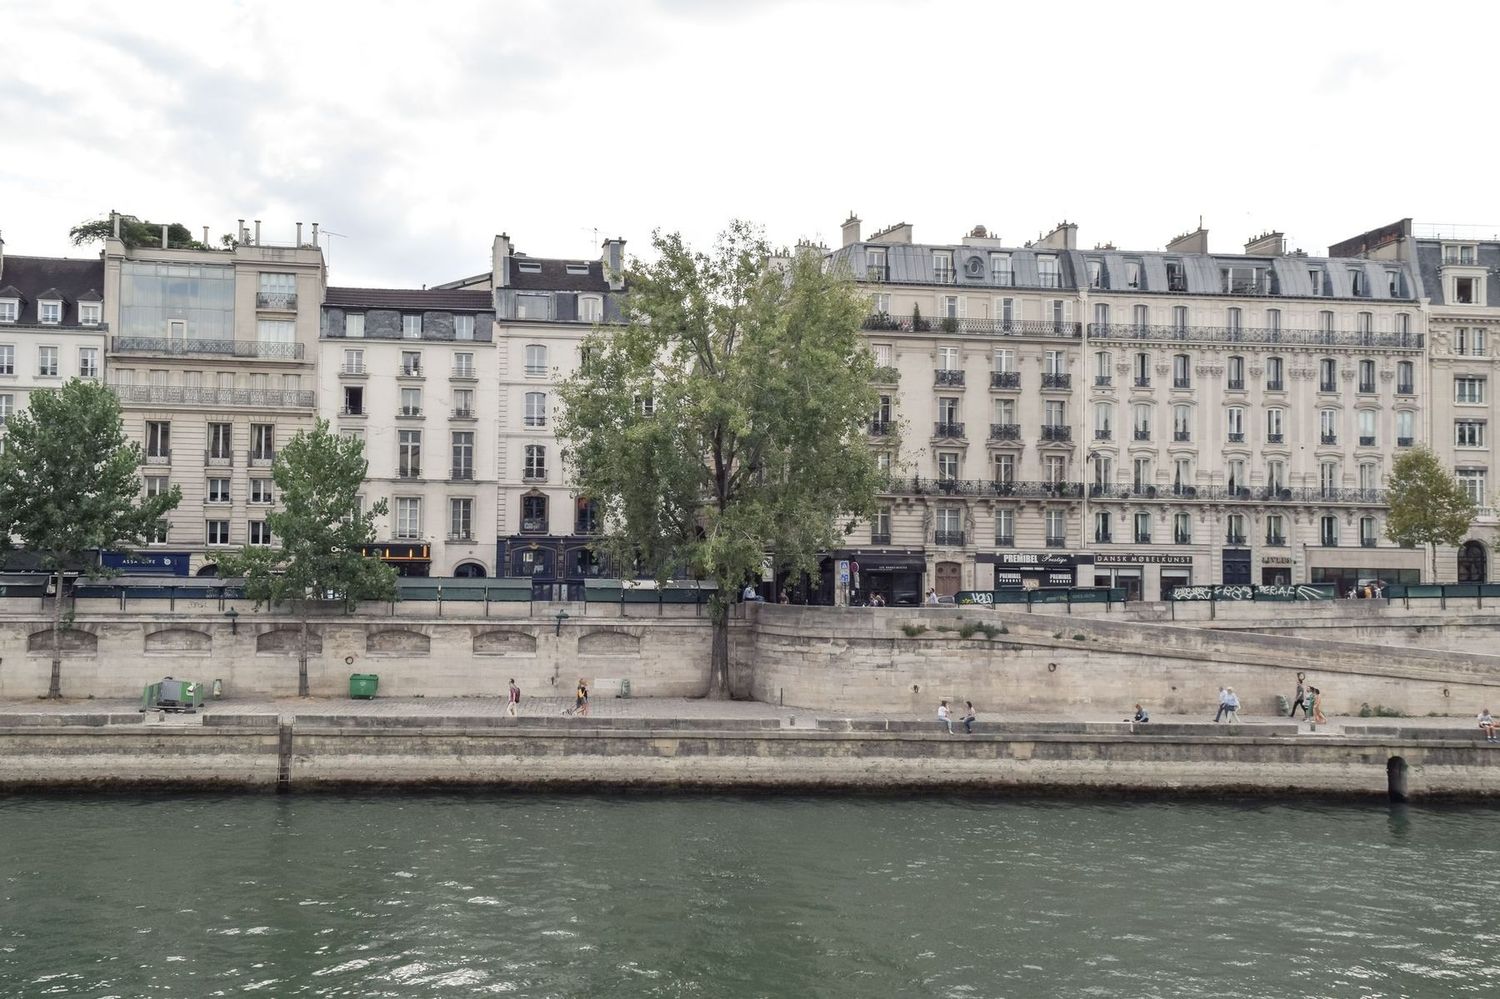 Parisian apartment buildings along the Seine River, Île de la Cité